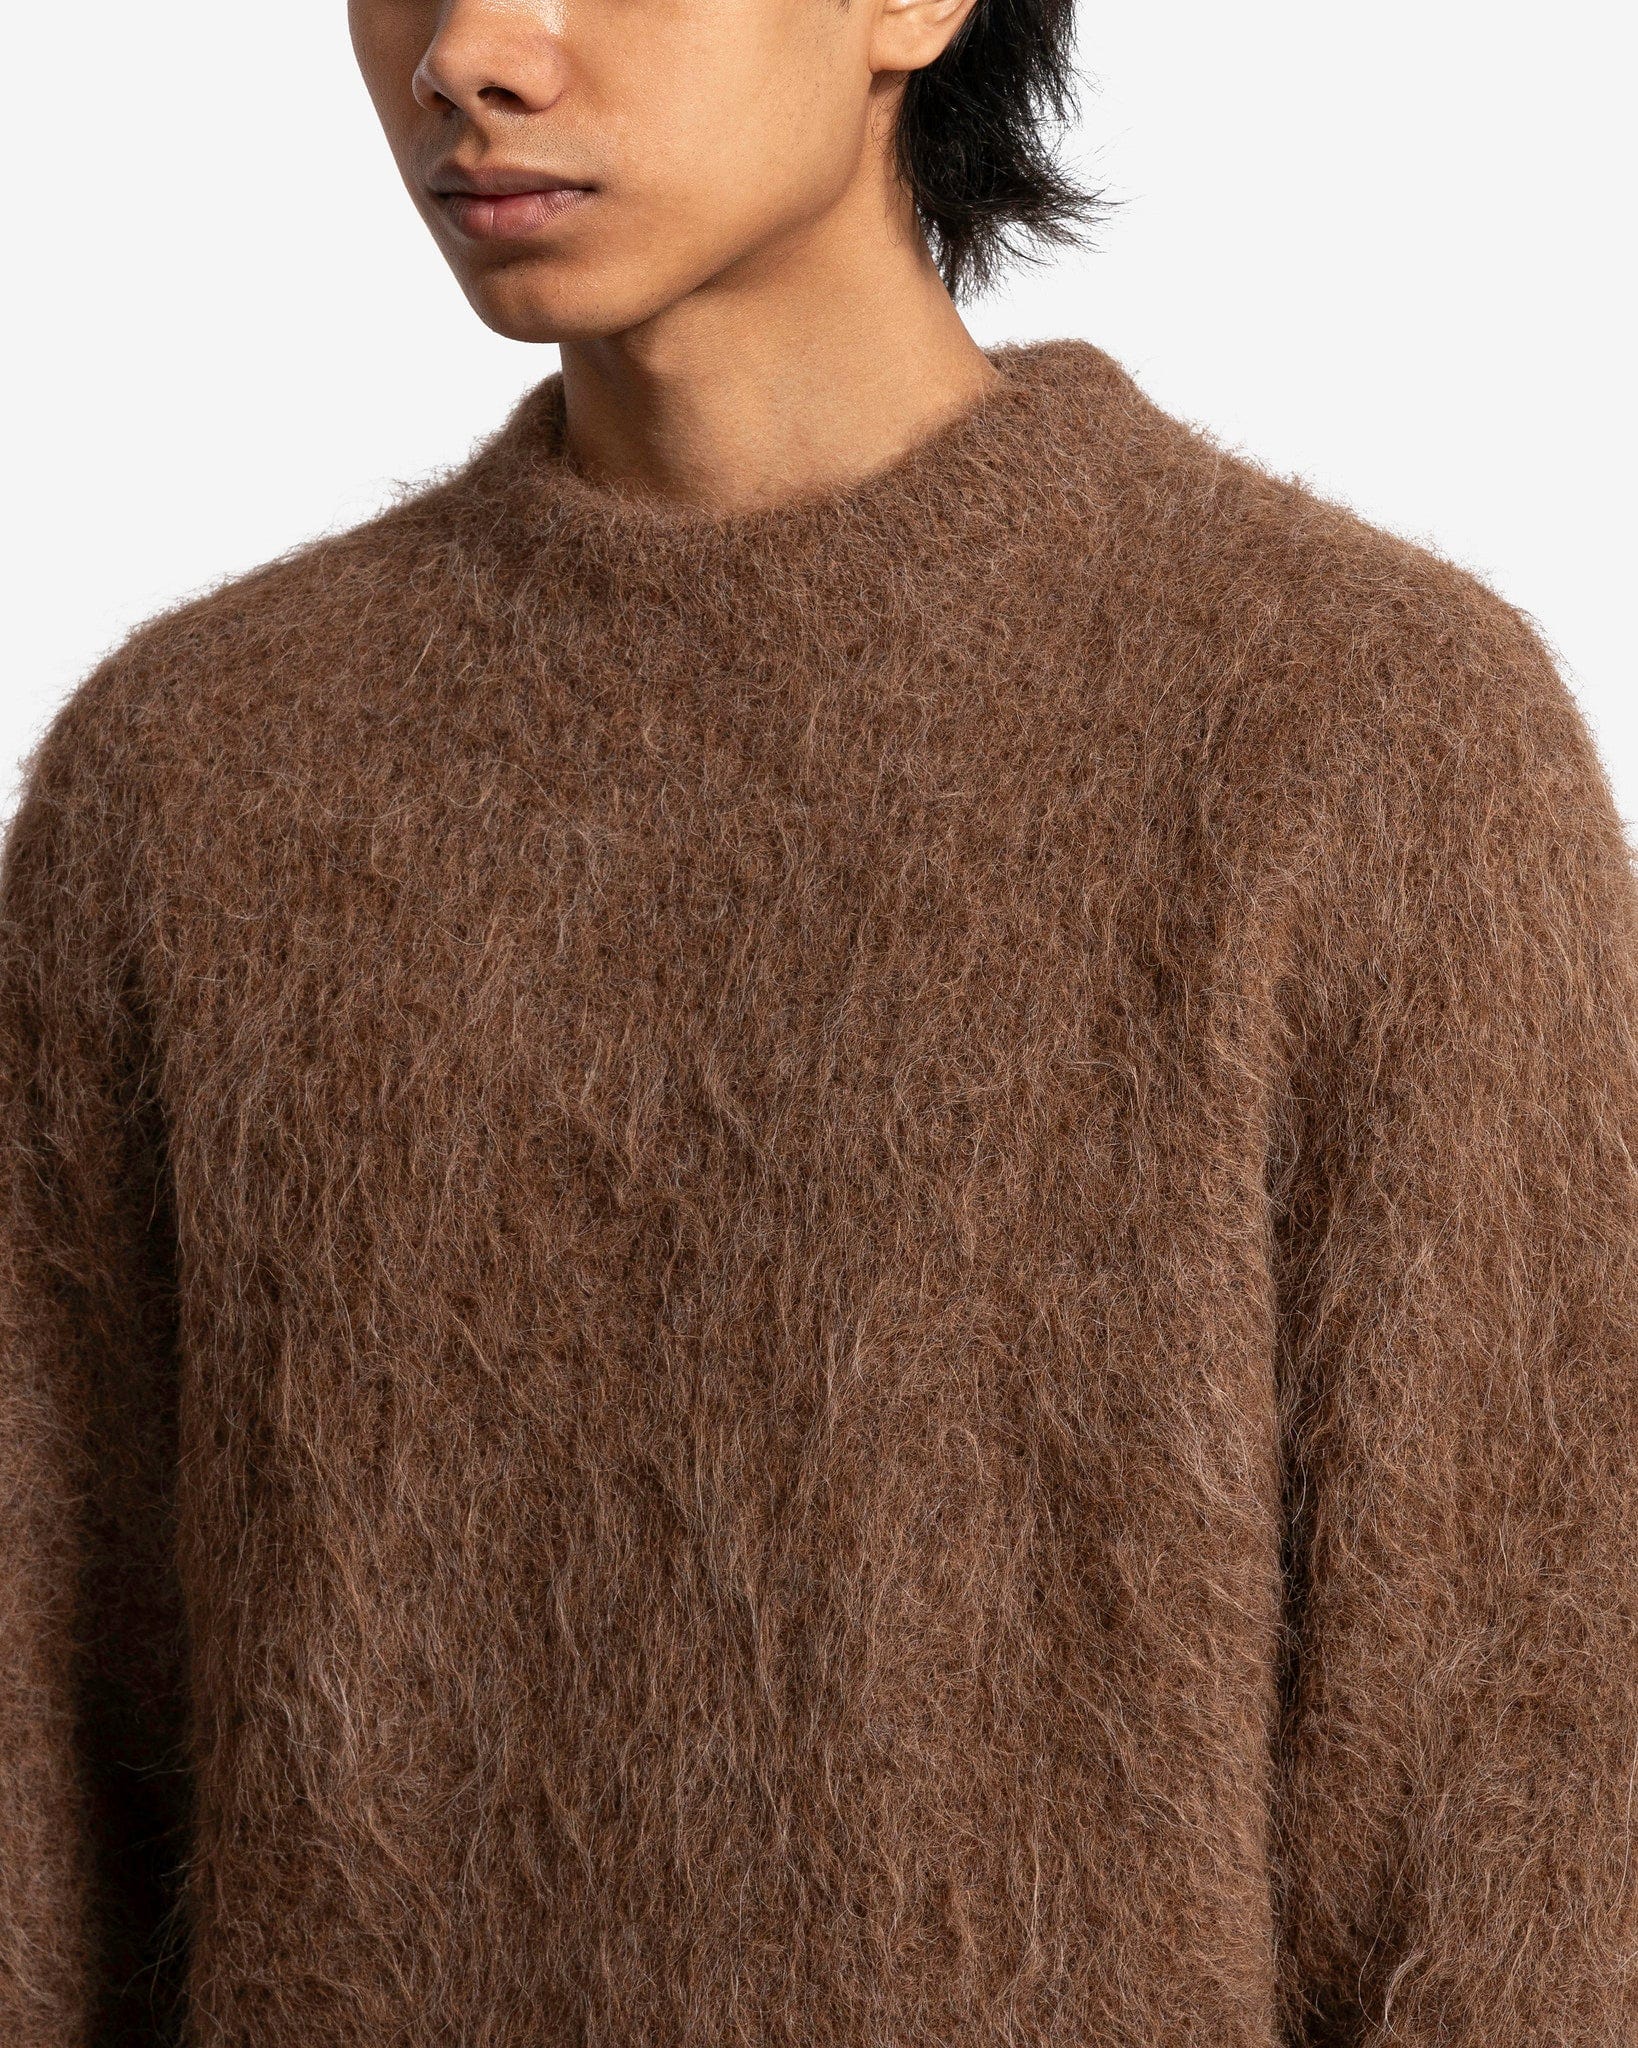 Haru Sweater in Taupe Alpaca